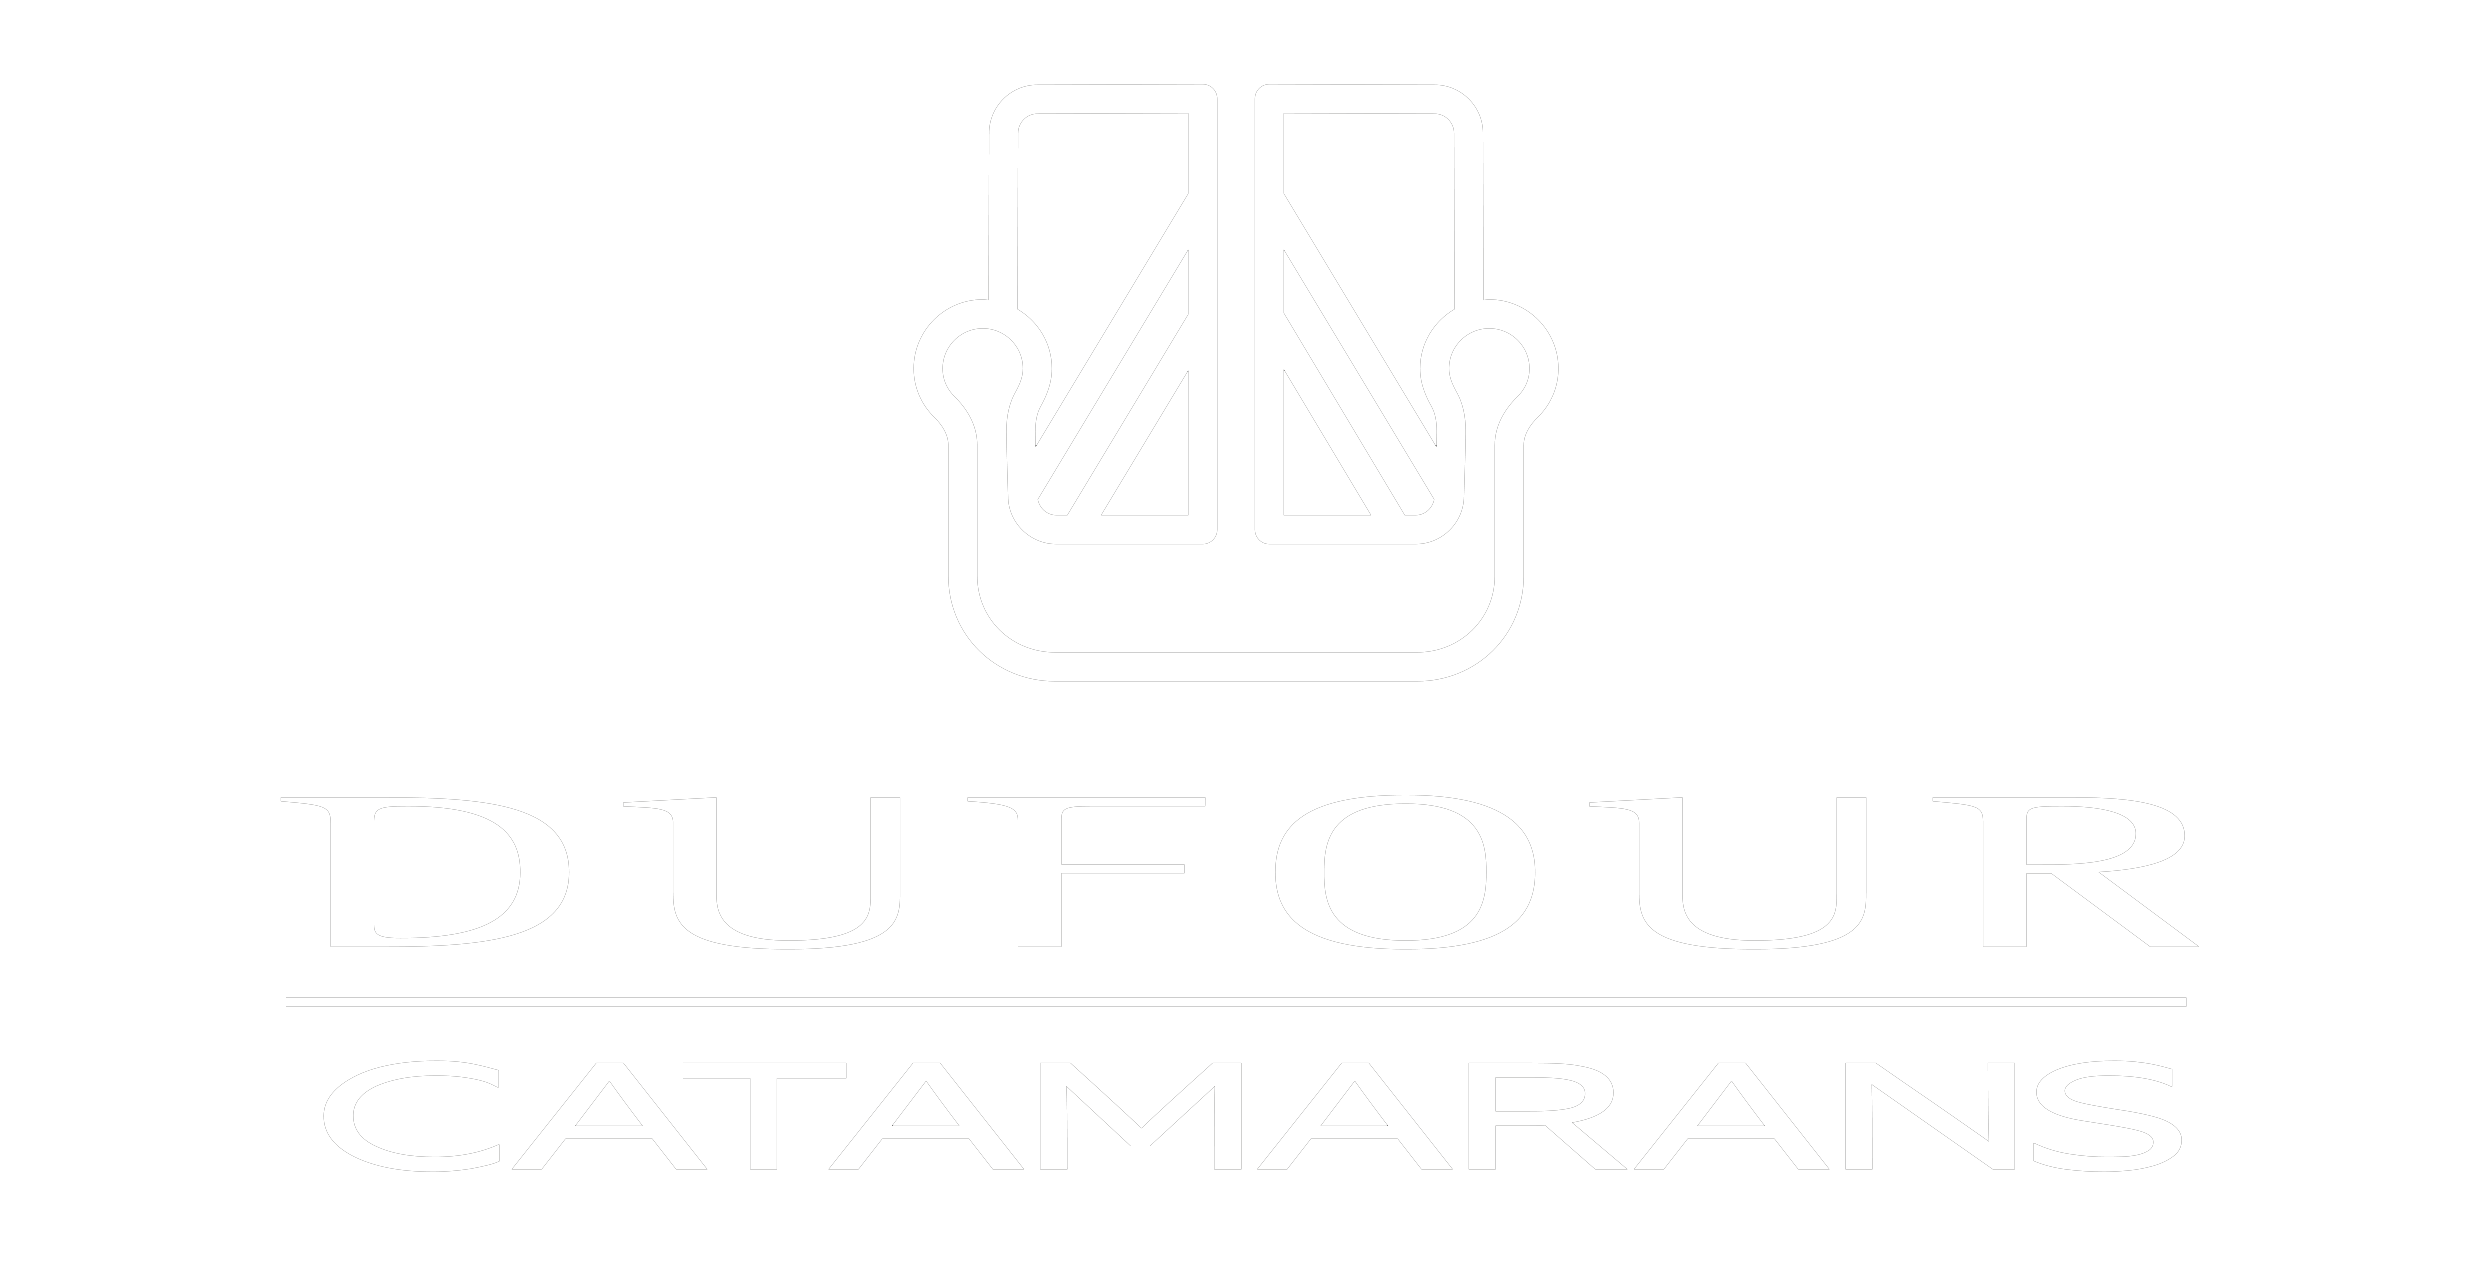 Logo Dufour Catamarans bco